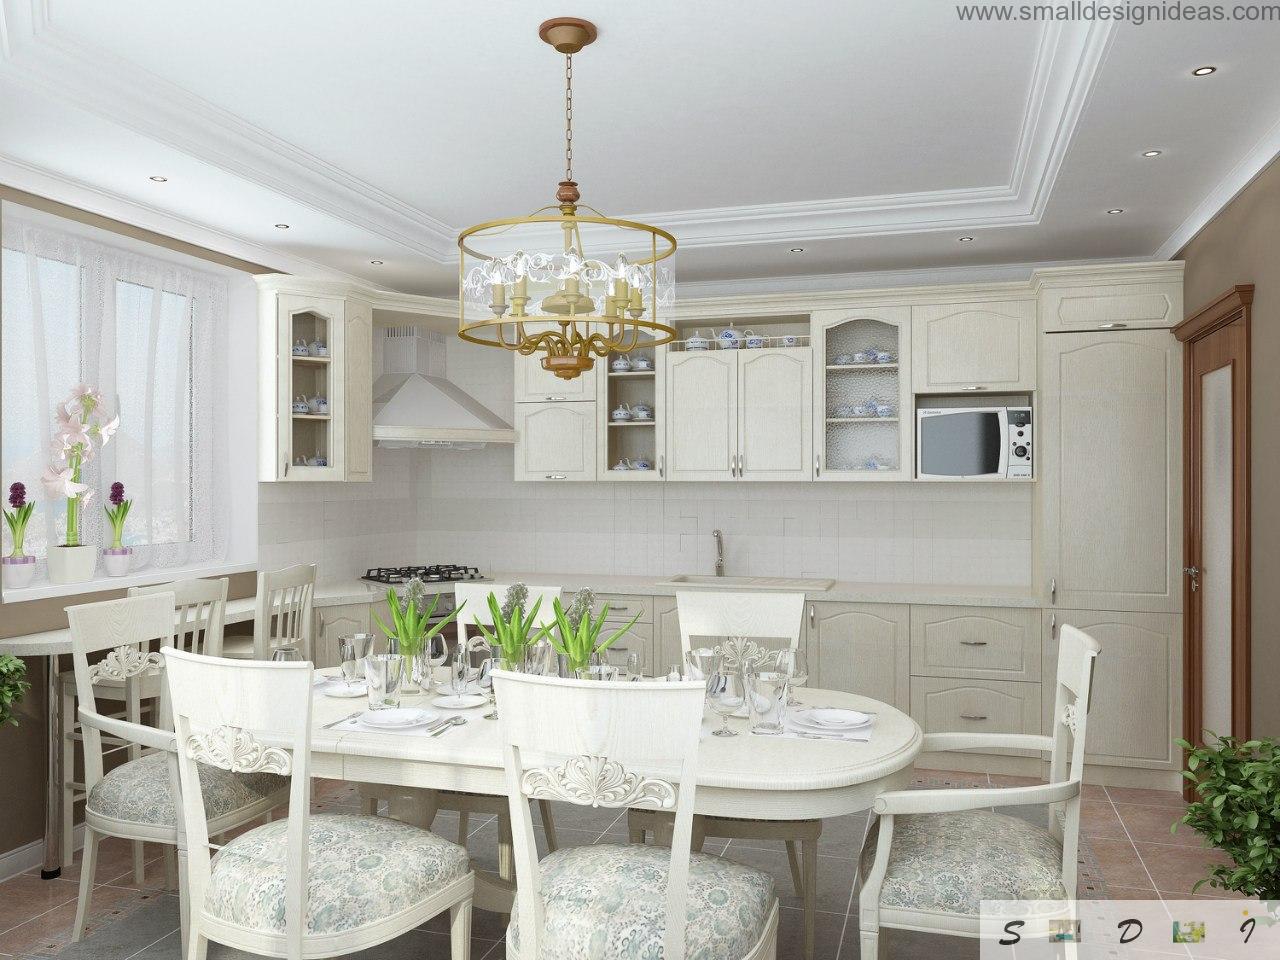 private house kitchen design